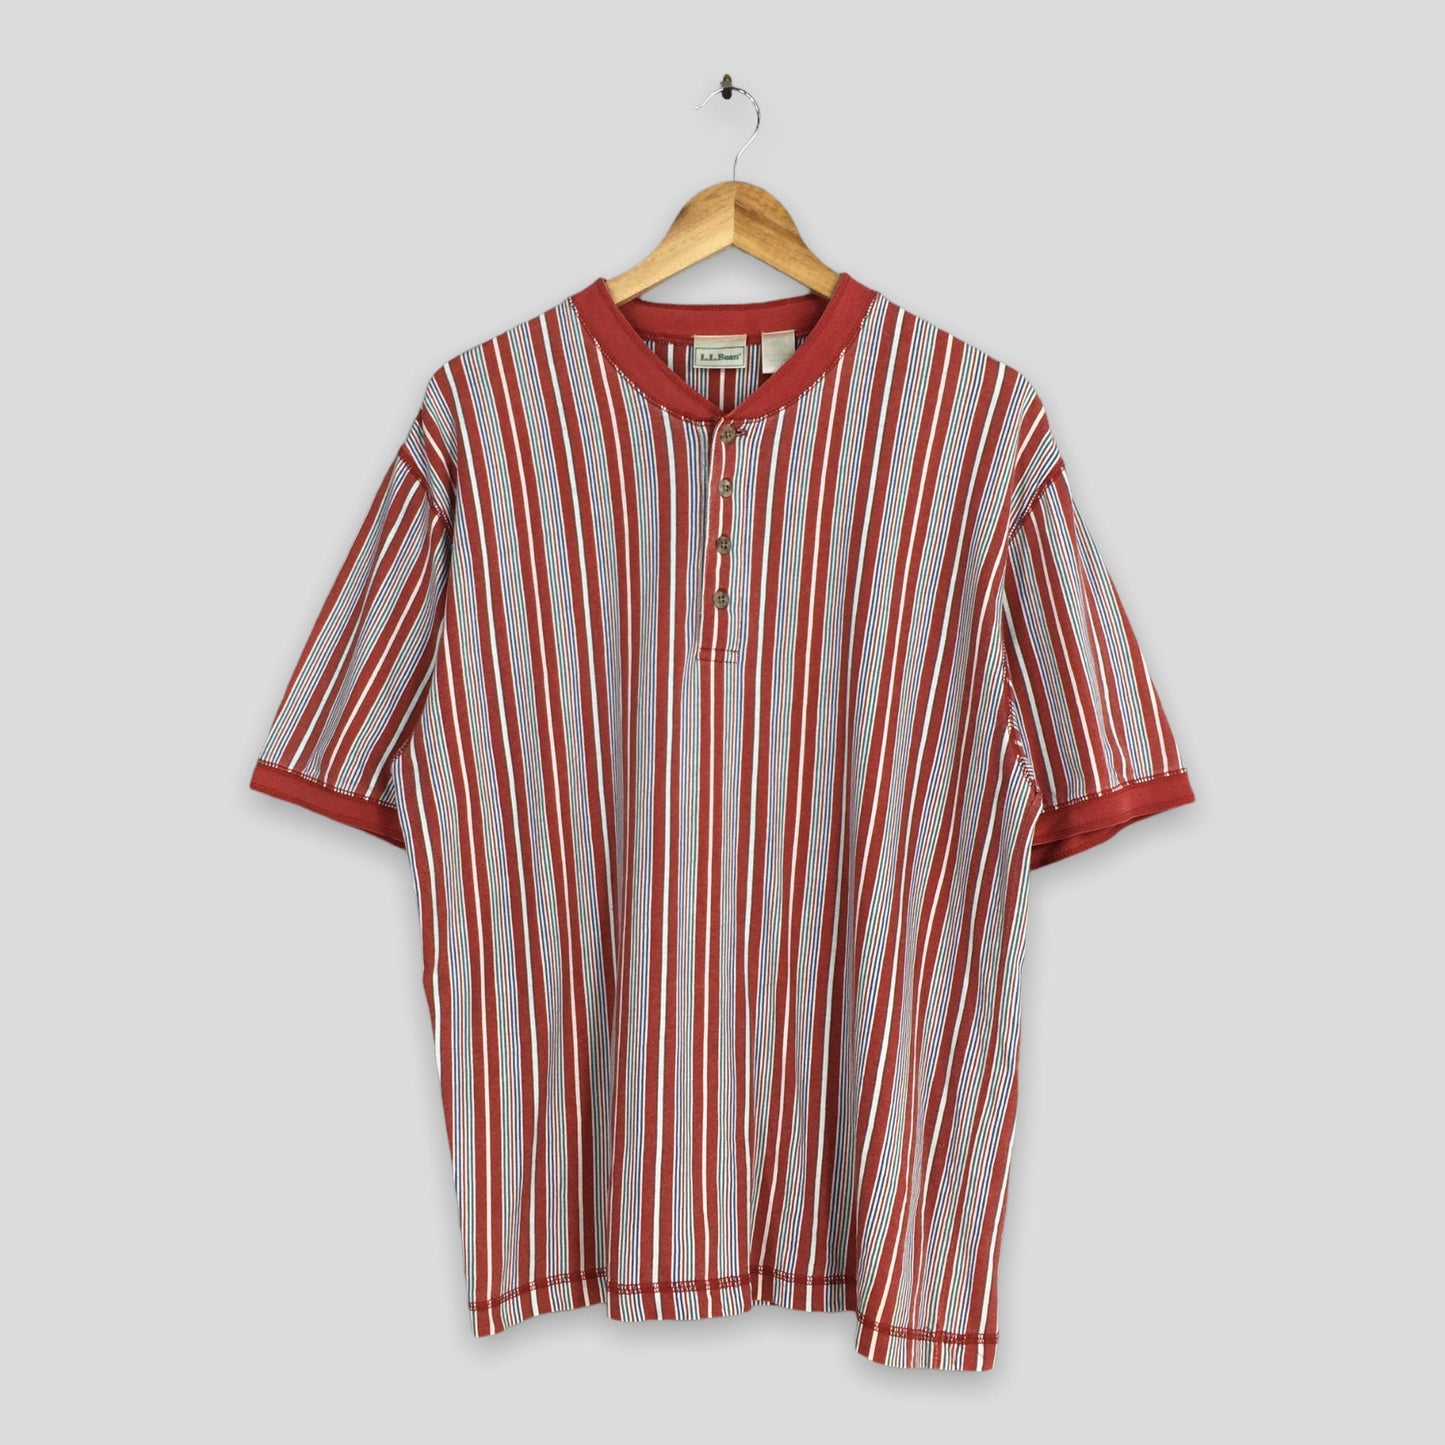 LL Bean Multicolor Stripes Red T shirt Medium